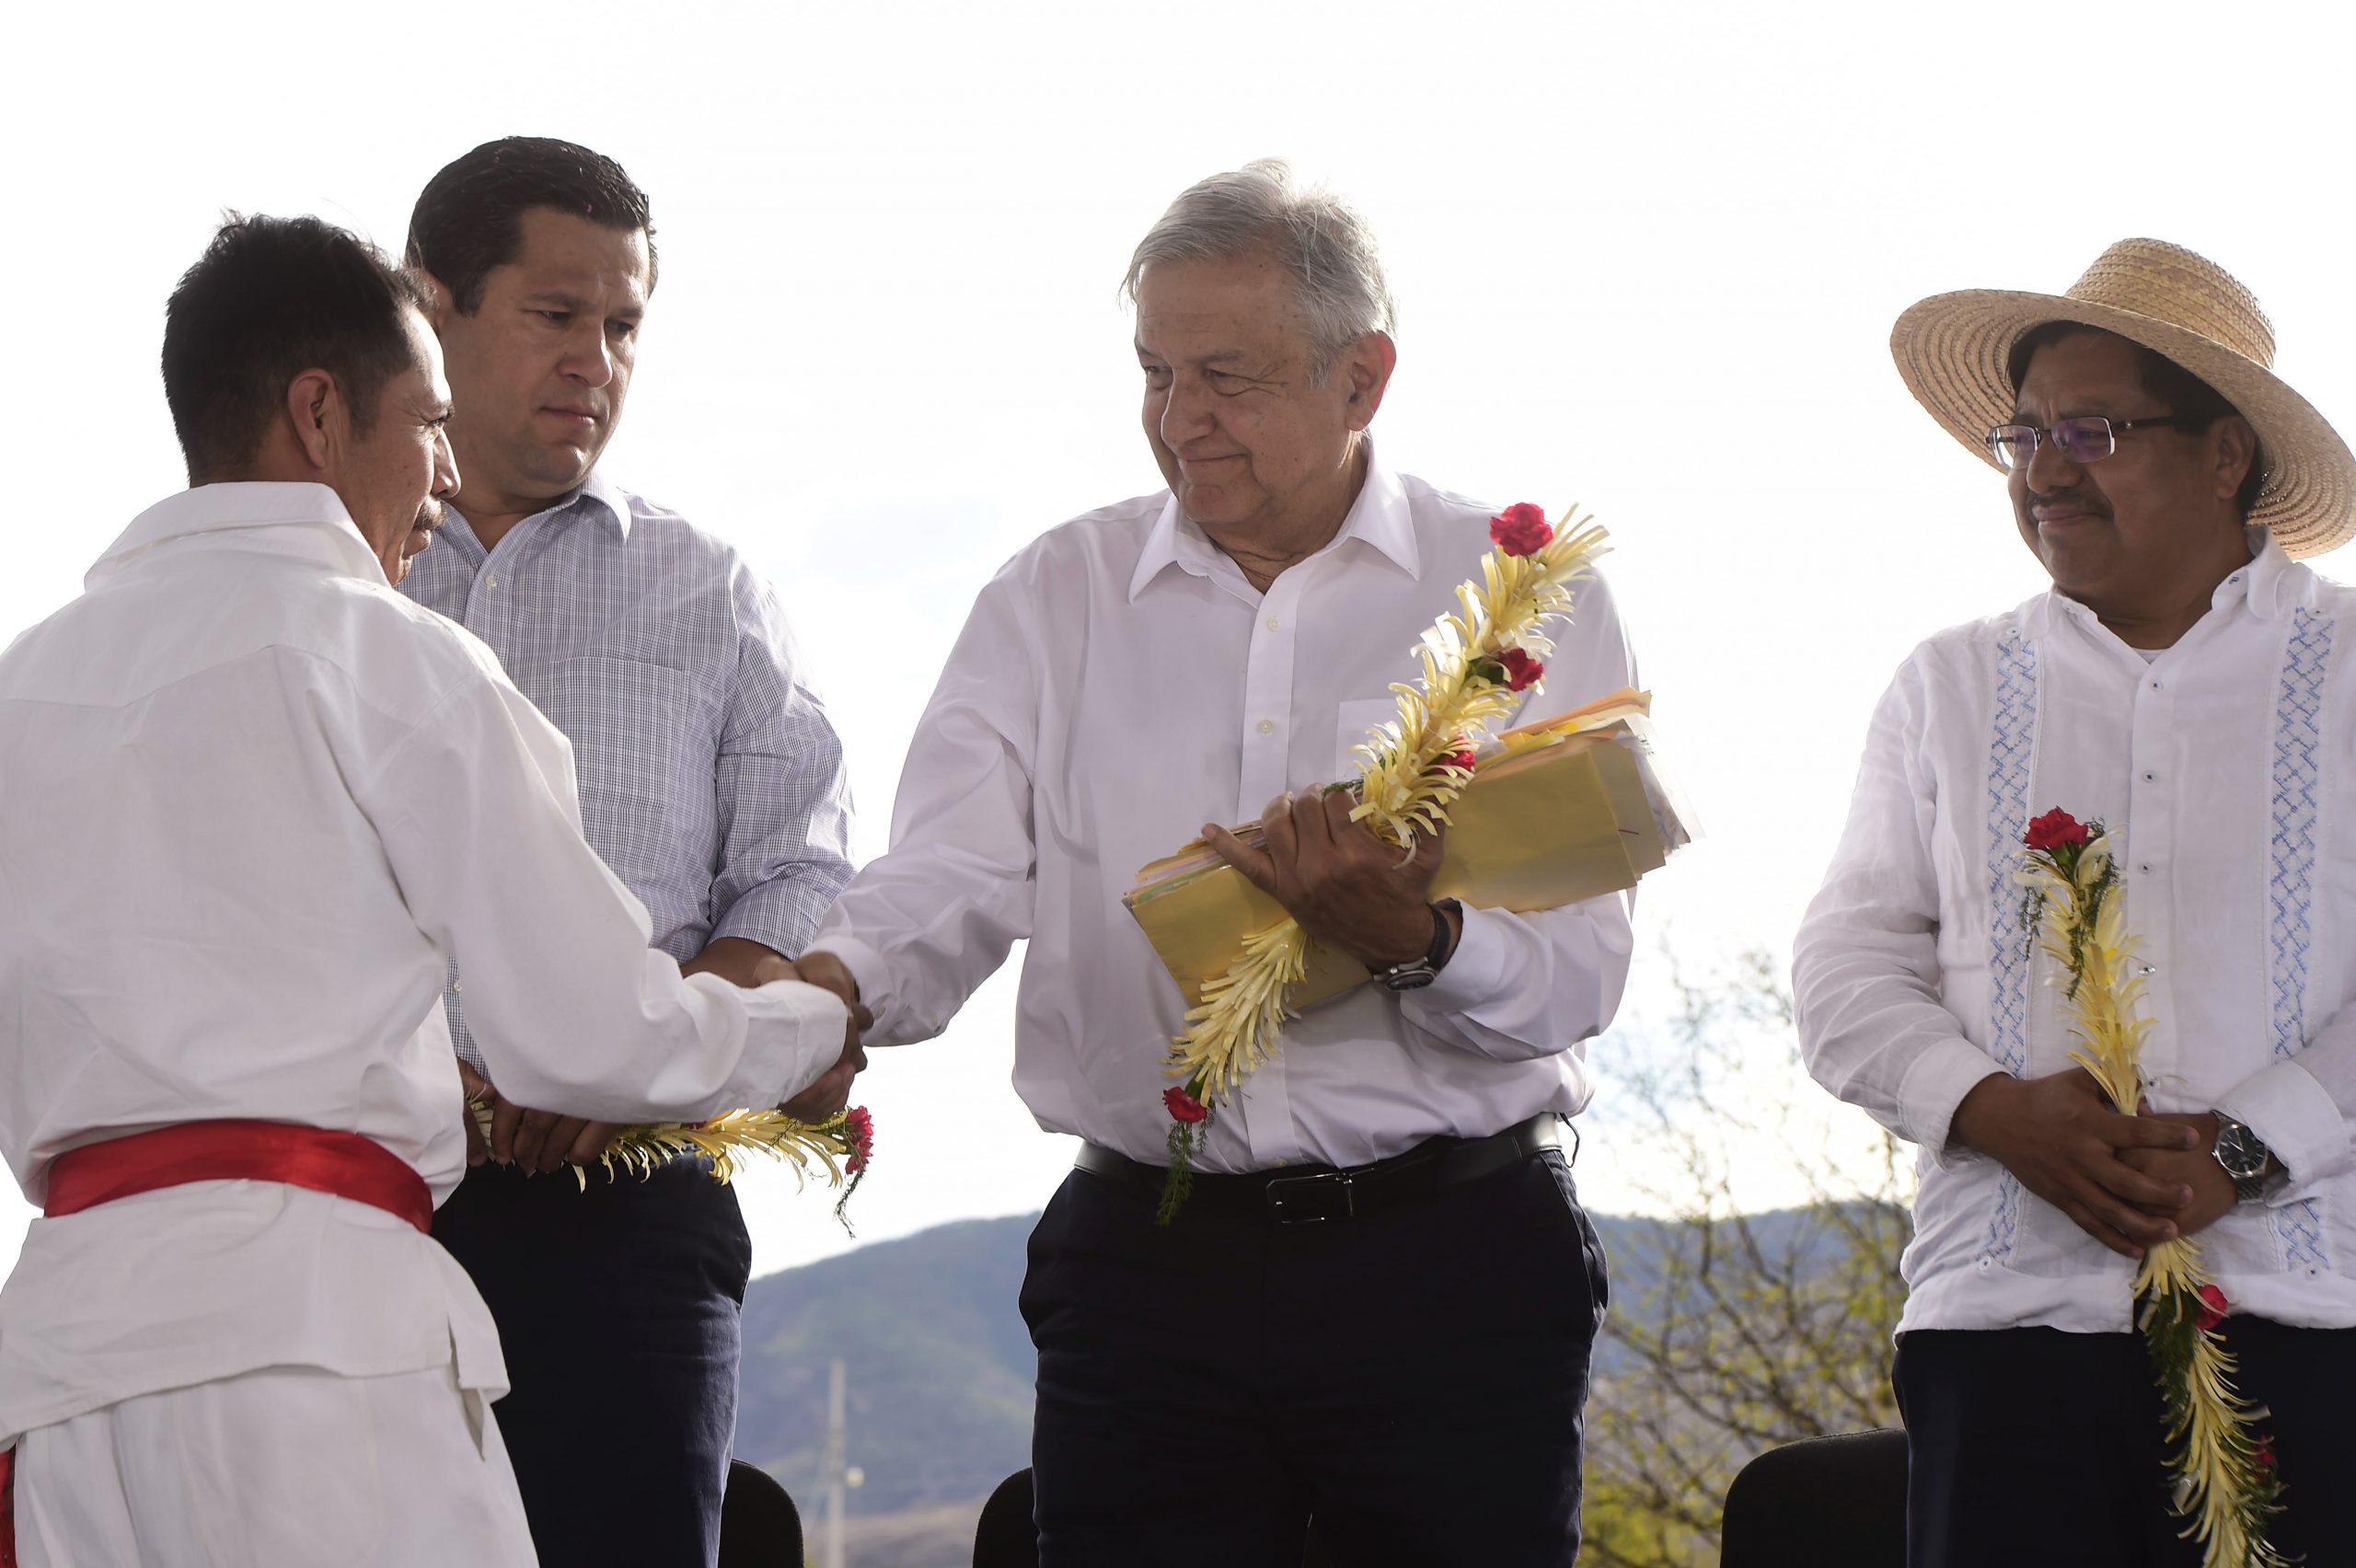 Los programas sociales del gobierno de AMLO son bienvenidos a Guanajuato: Diego Sinhue